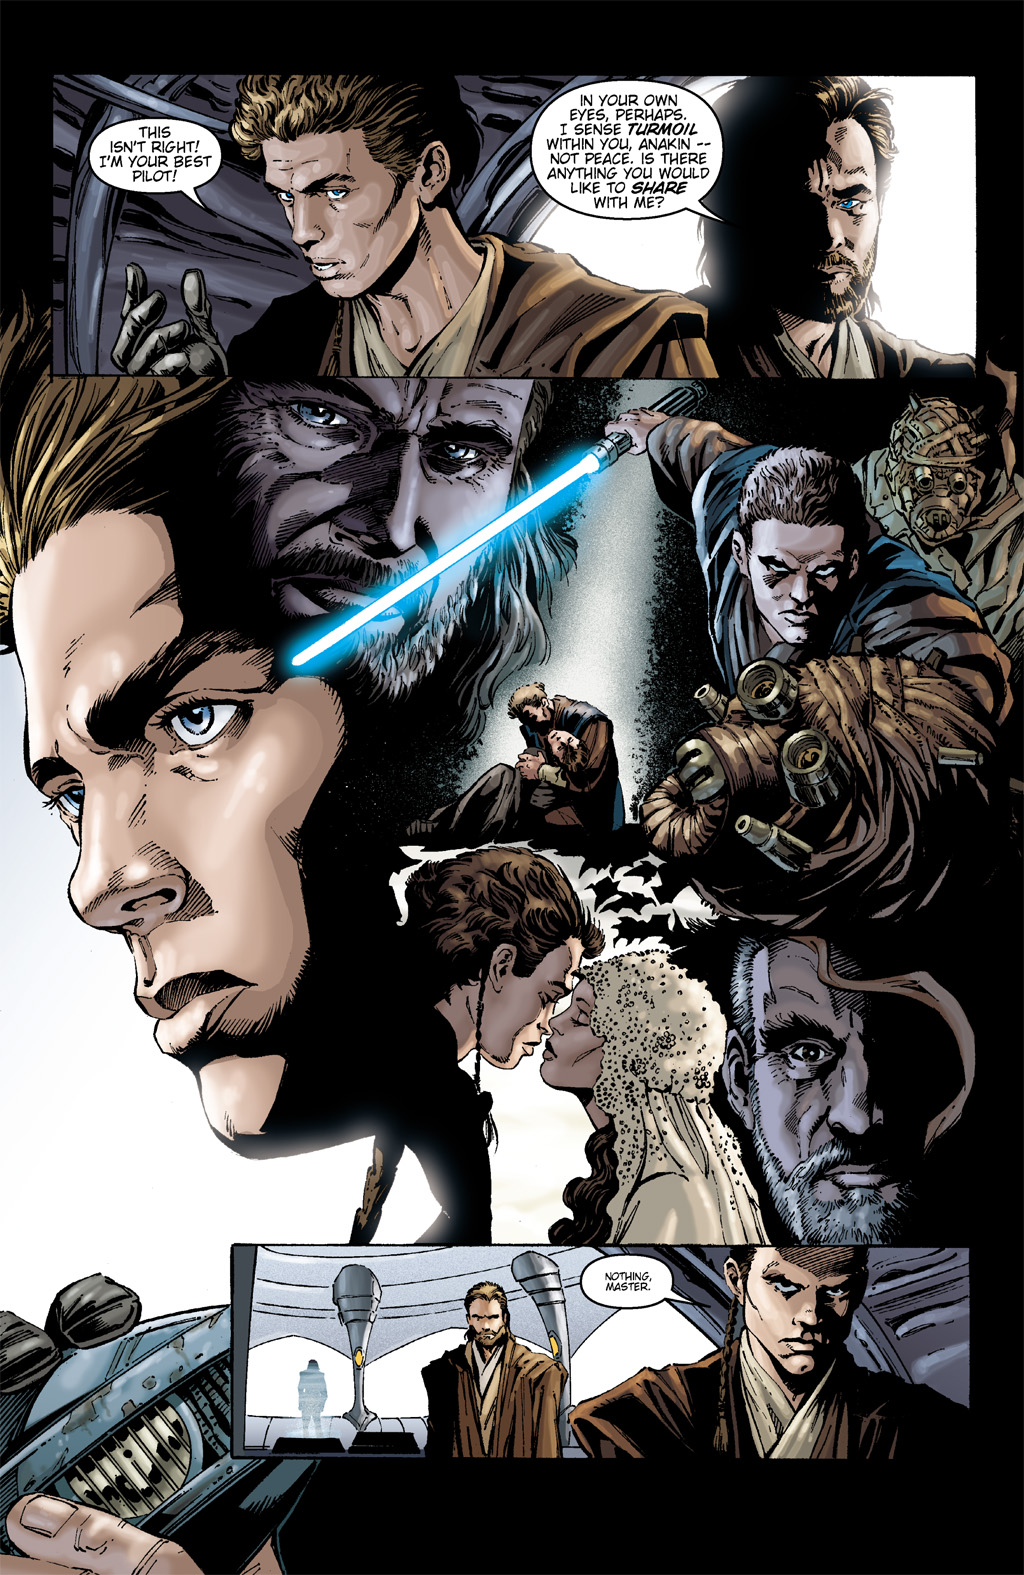 Read online Star Wars: Clone Wars comic -  Issue # TPB 1 - 35